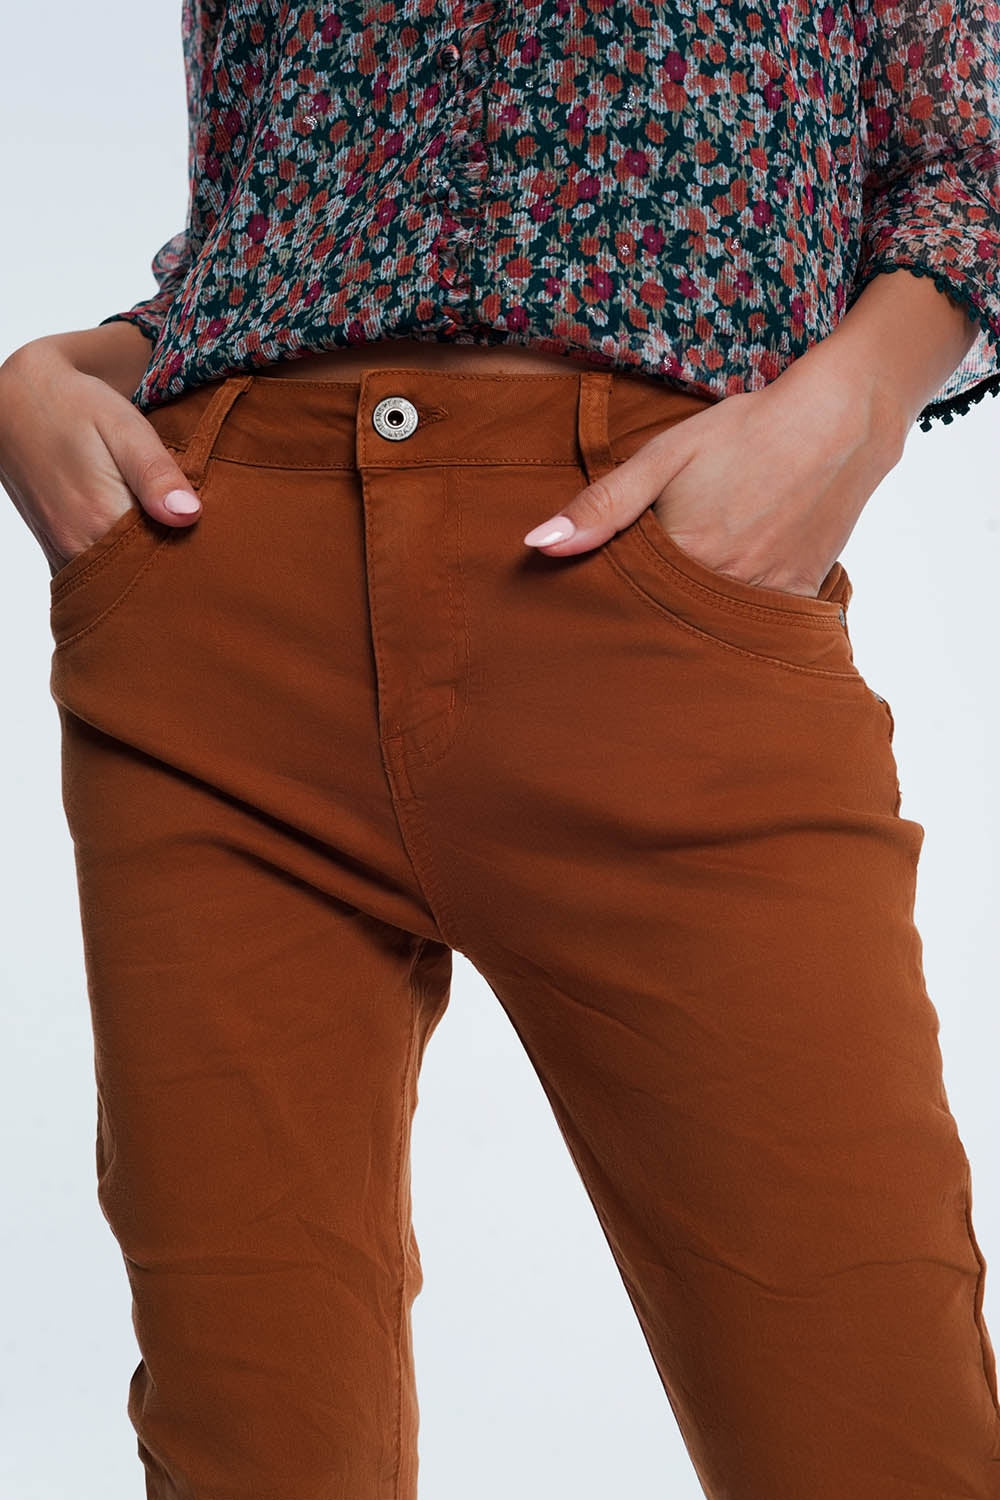 Q2 Drop crotch skinny jean in Orange